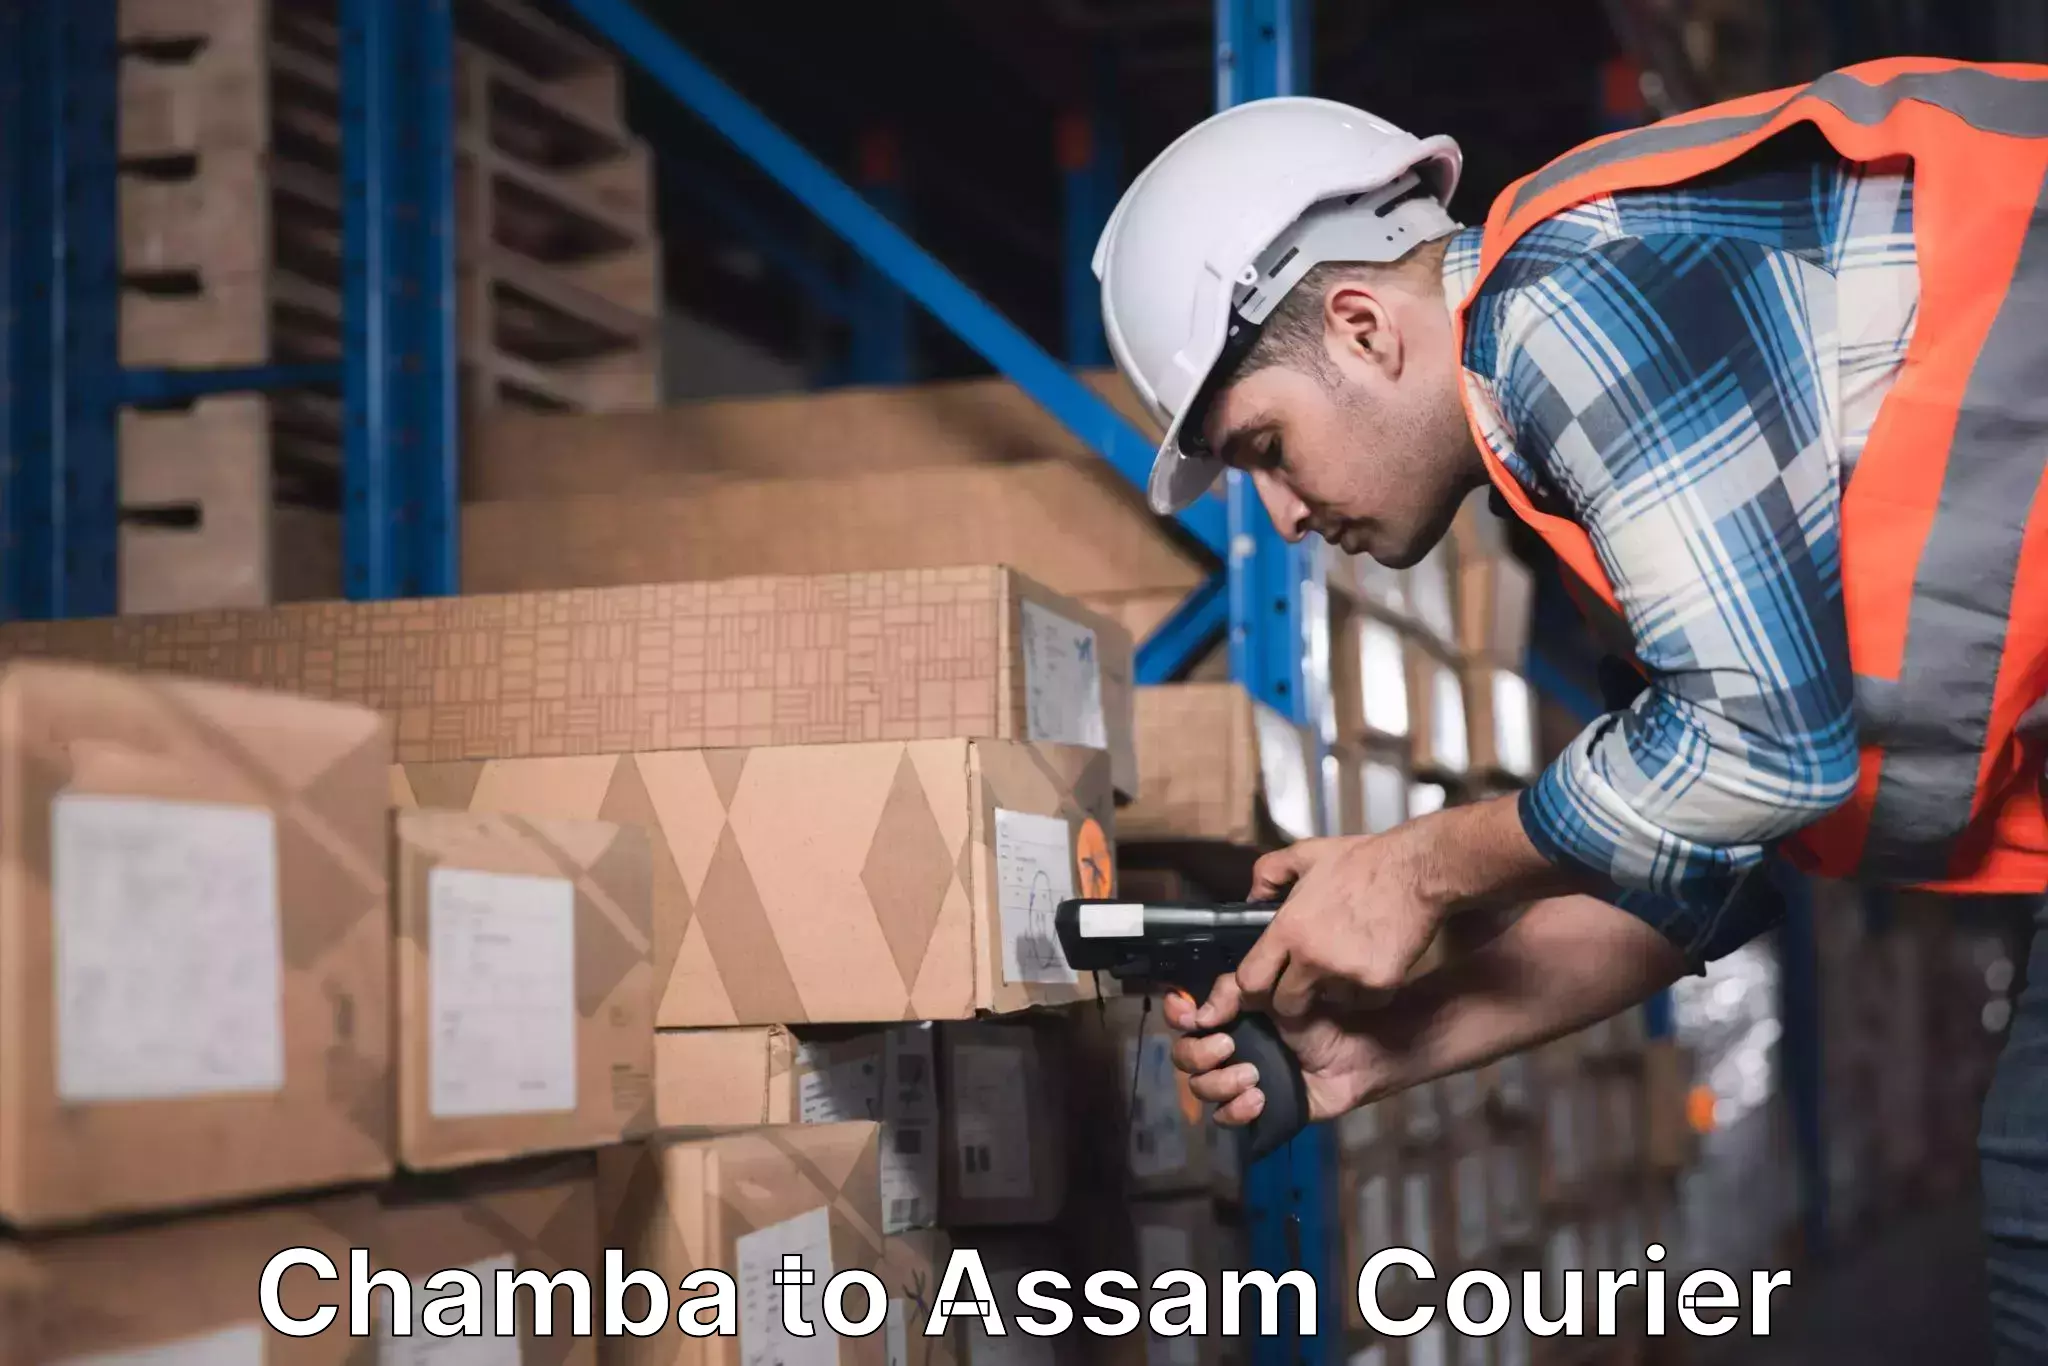 Seamless shipping service Chamba to Manikpur Bongaigaon